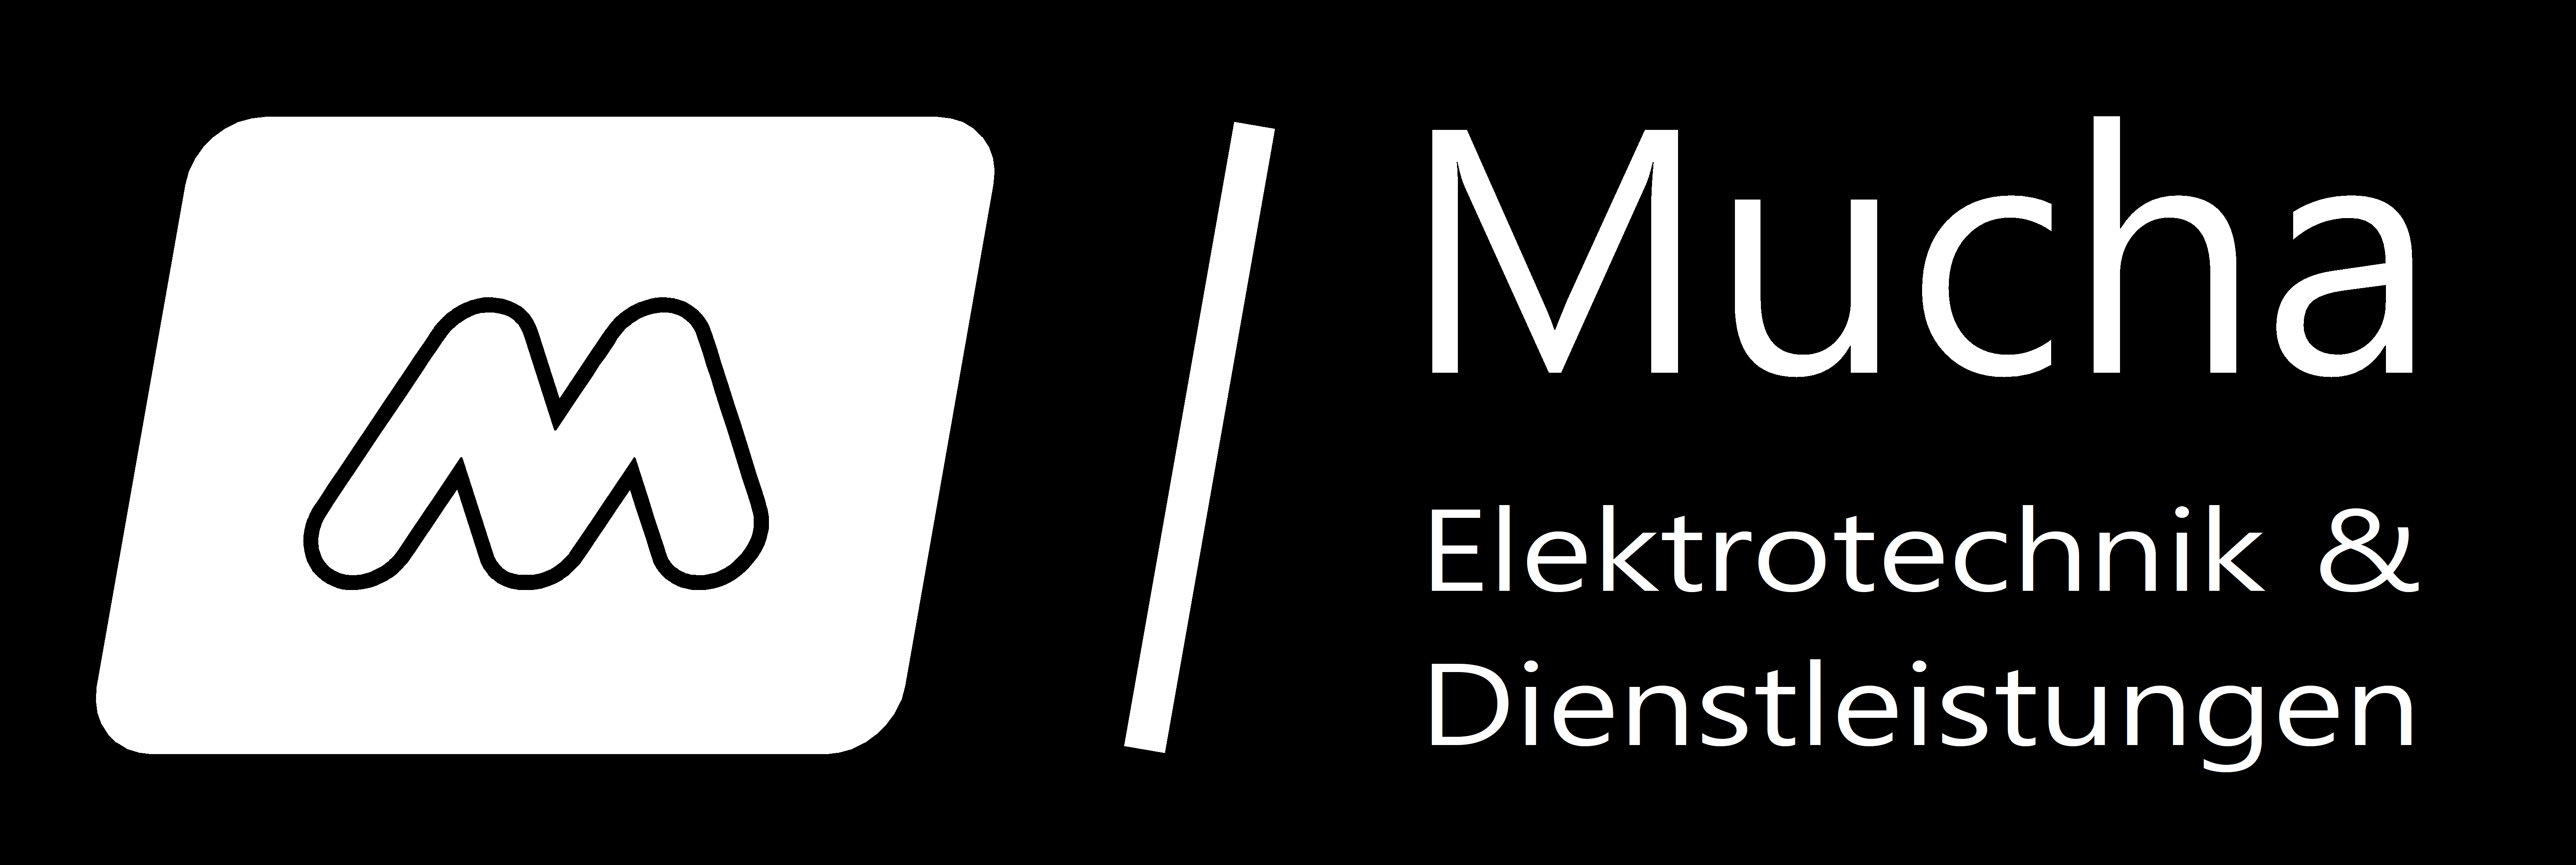 Matthias Mucha Elektrotechnik & Dienstleistungen